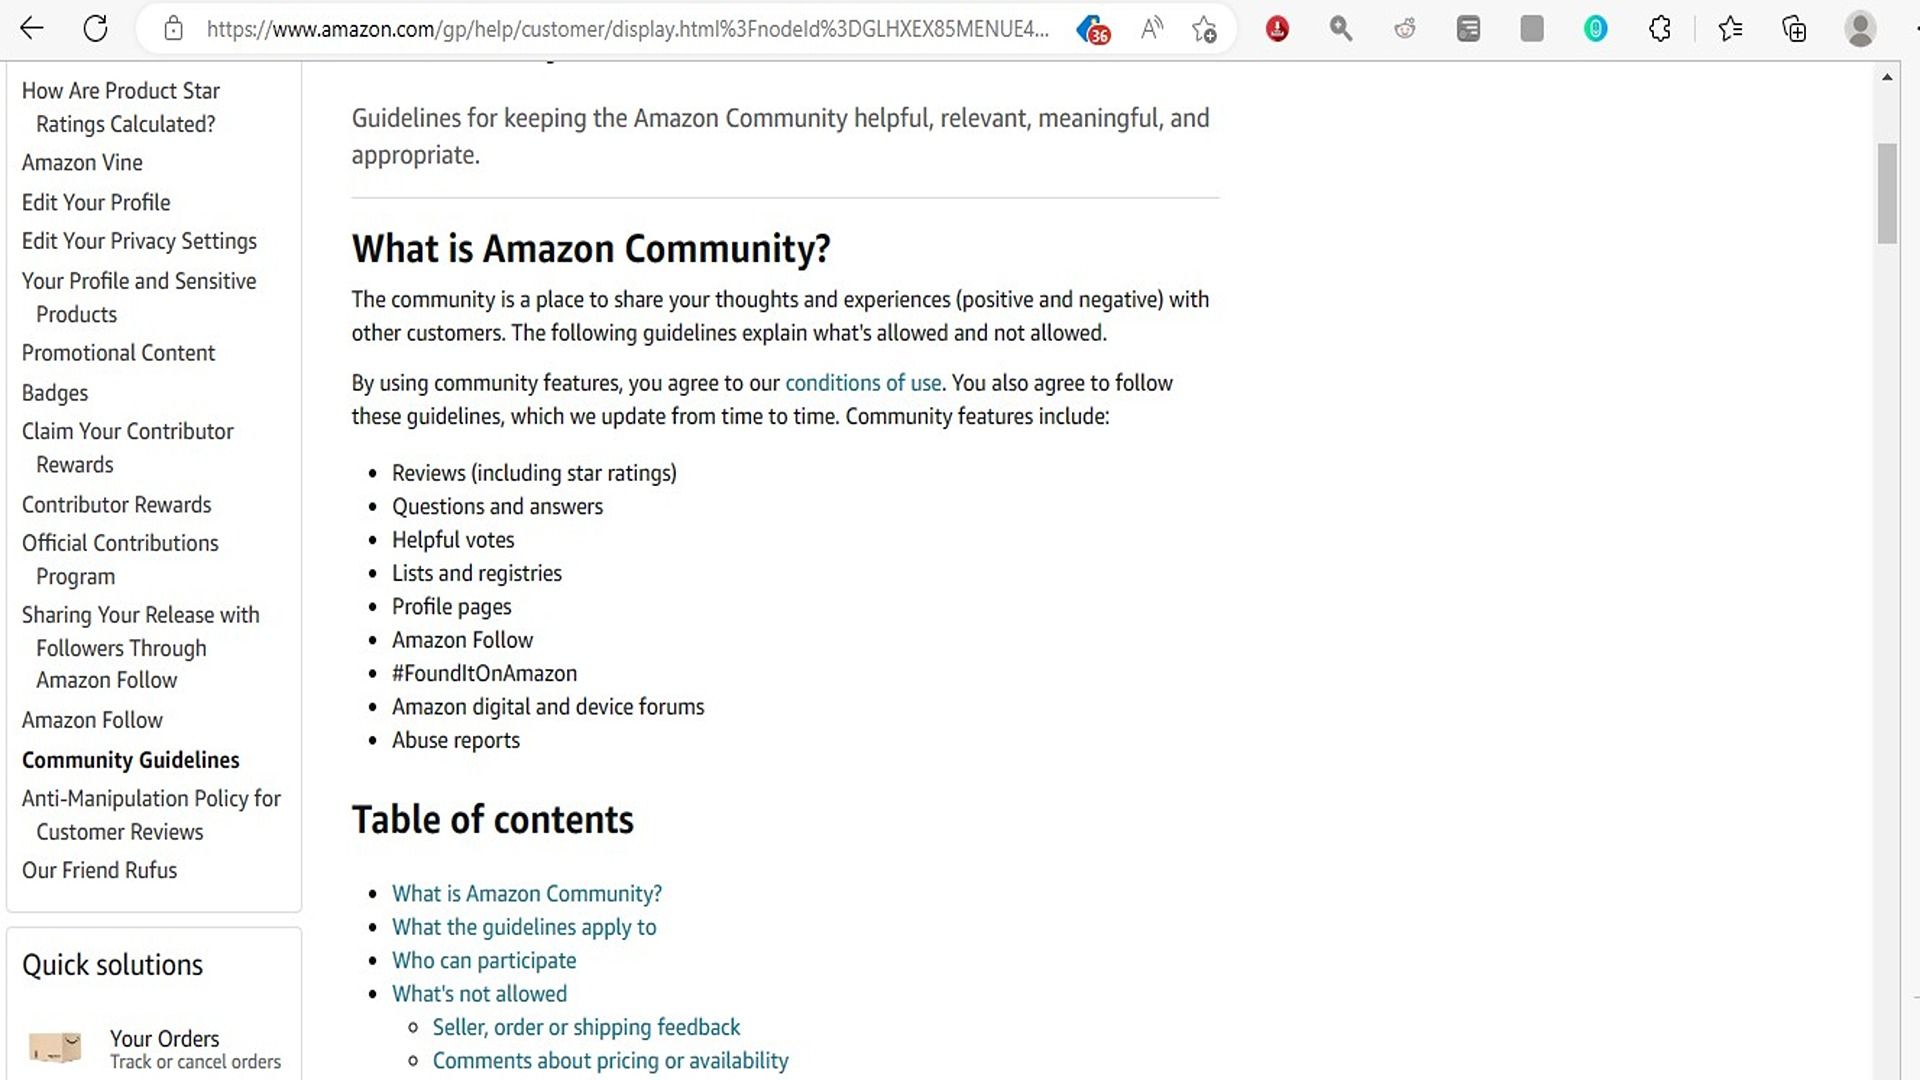 Amazon's Community guidelines